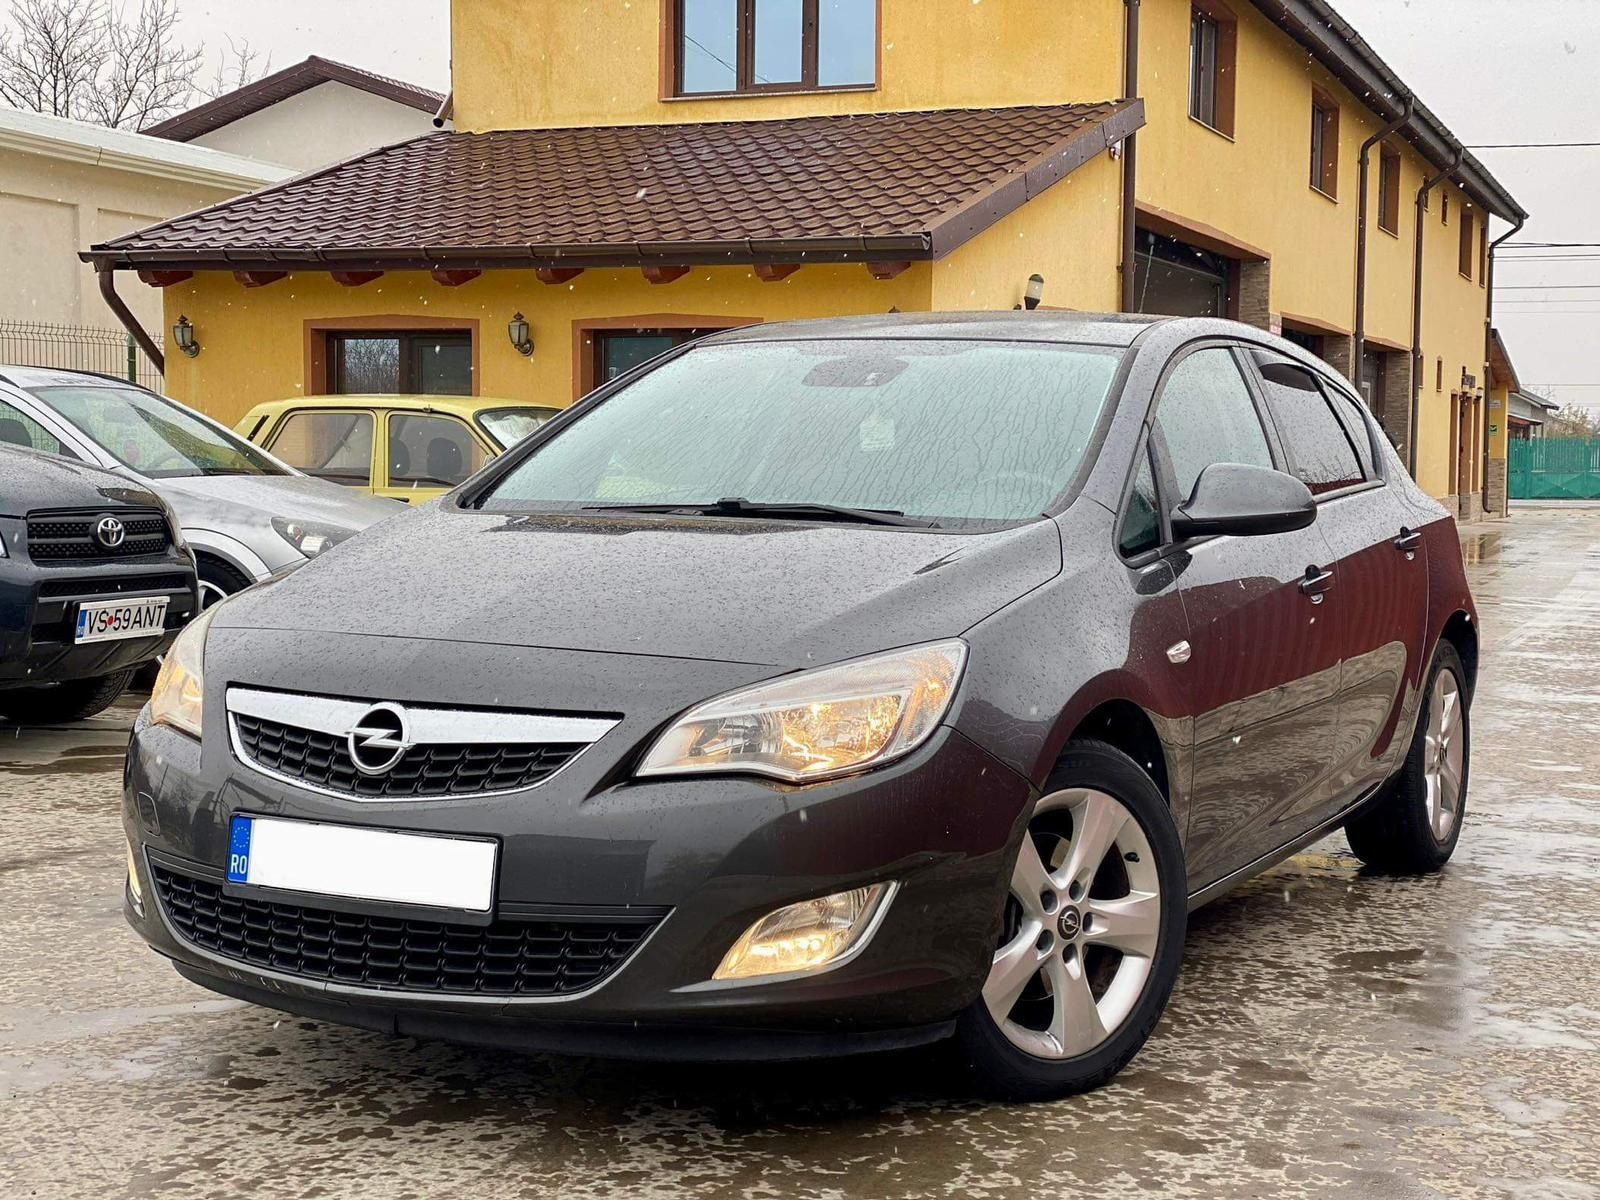 Vând Opel Astra J